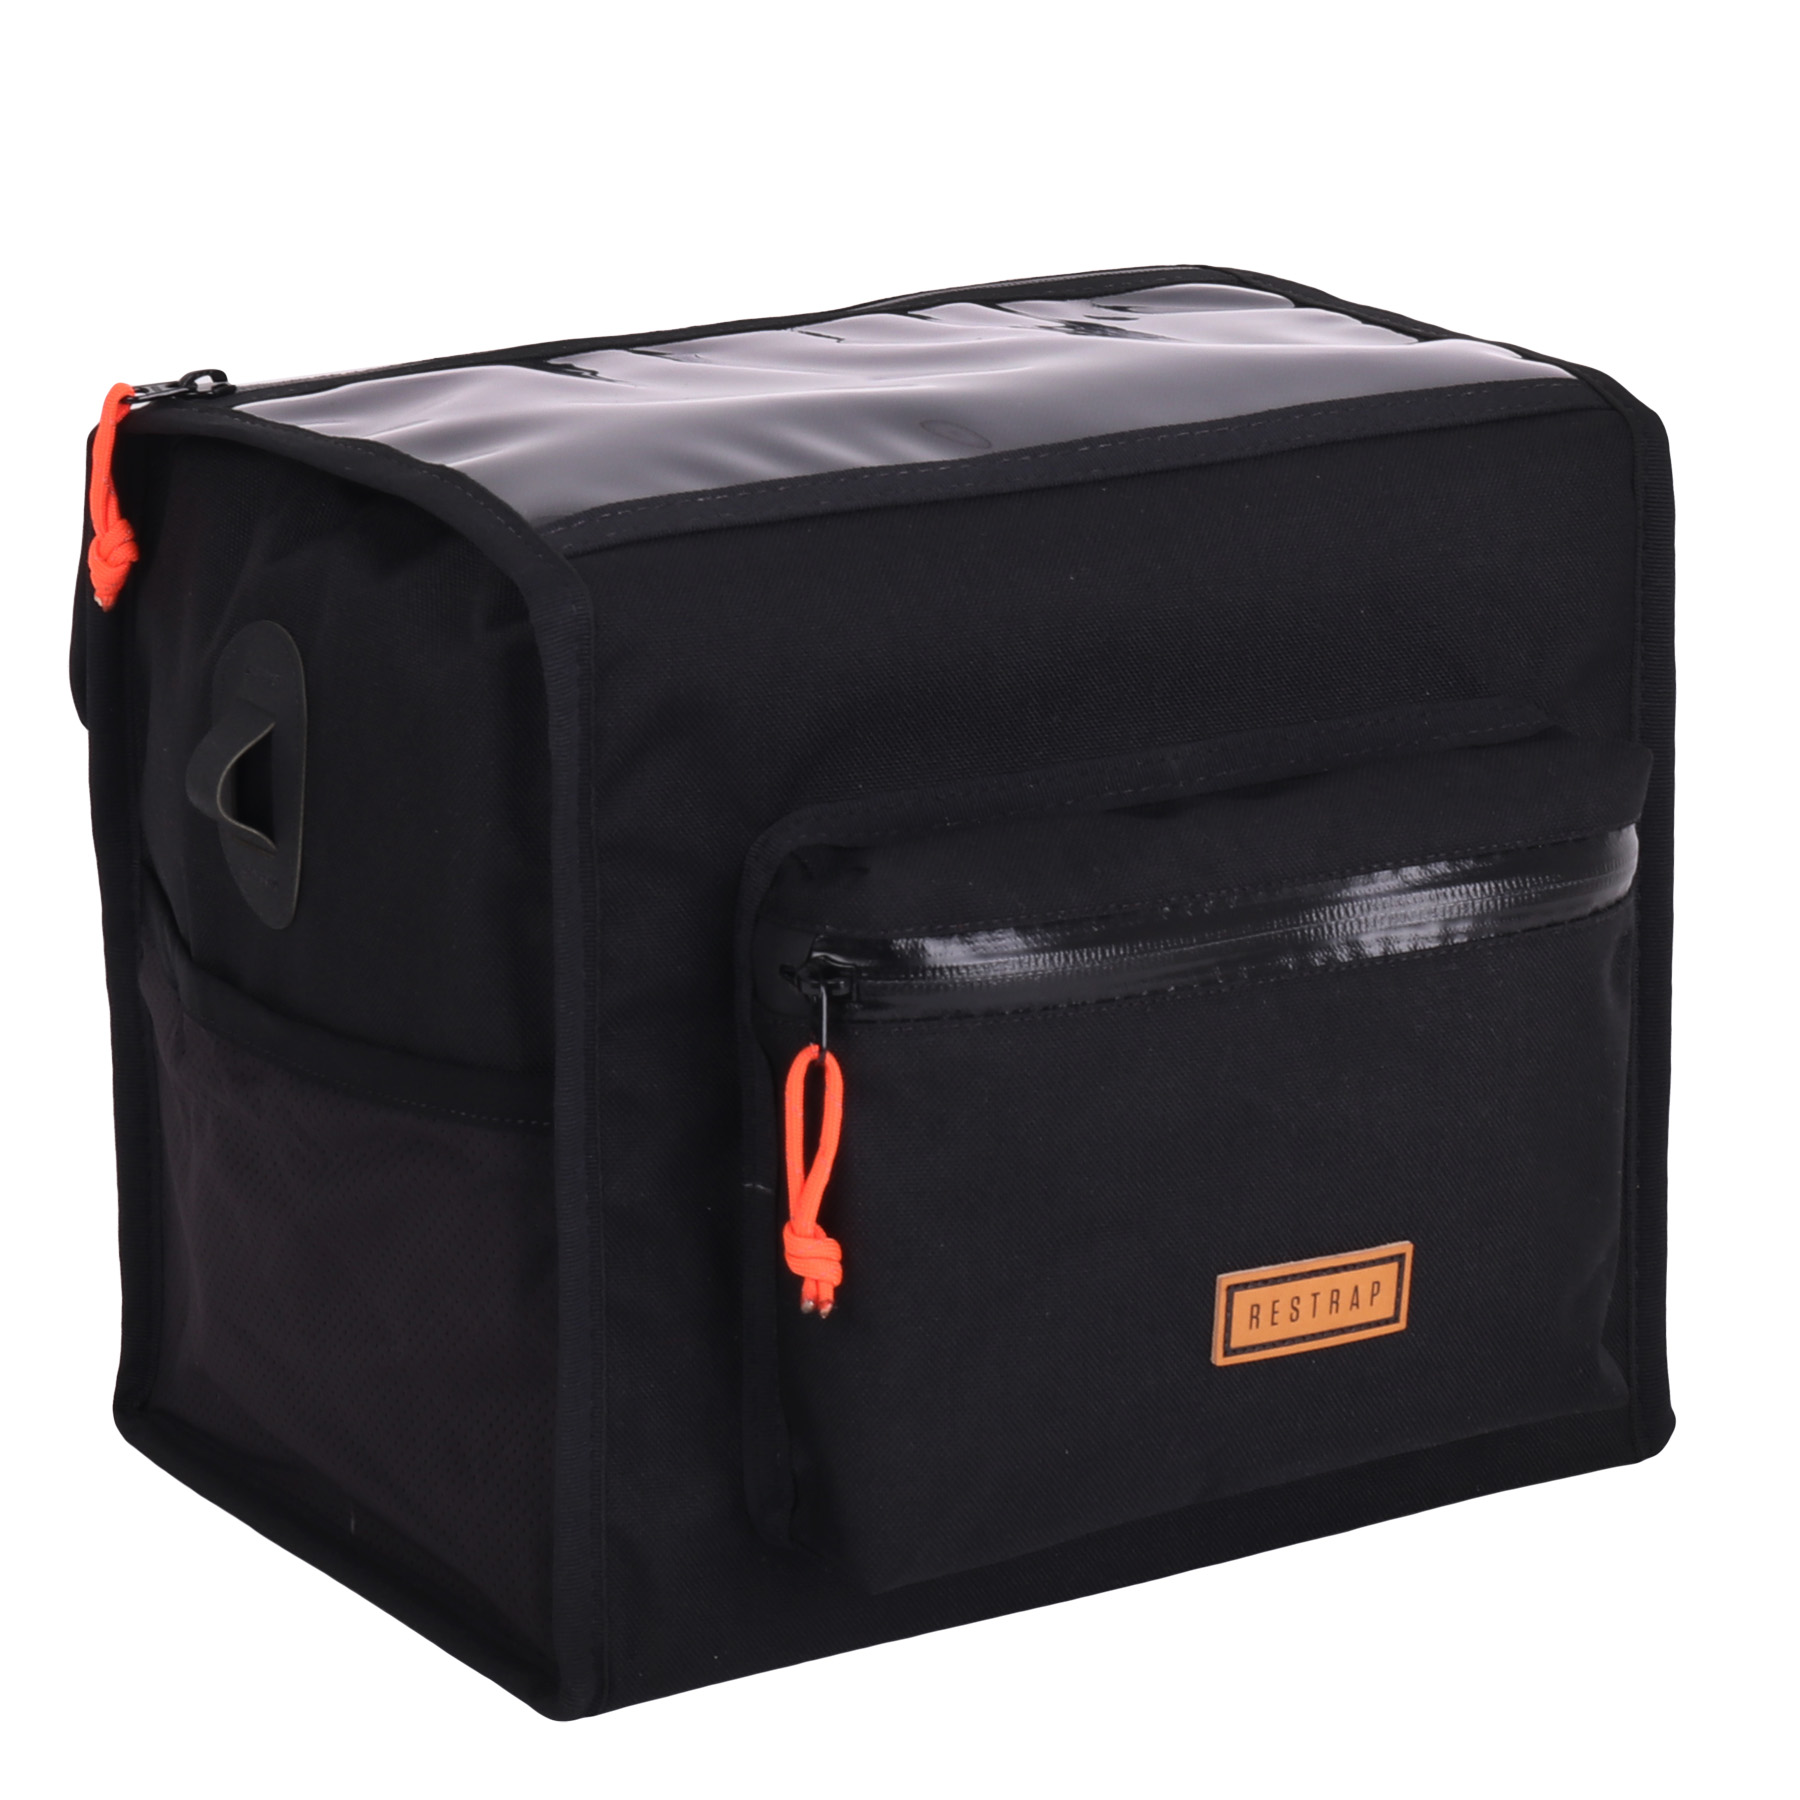 Produktbild von Restrap Rando Bag L Gepäckträgertasche - schwarz